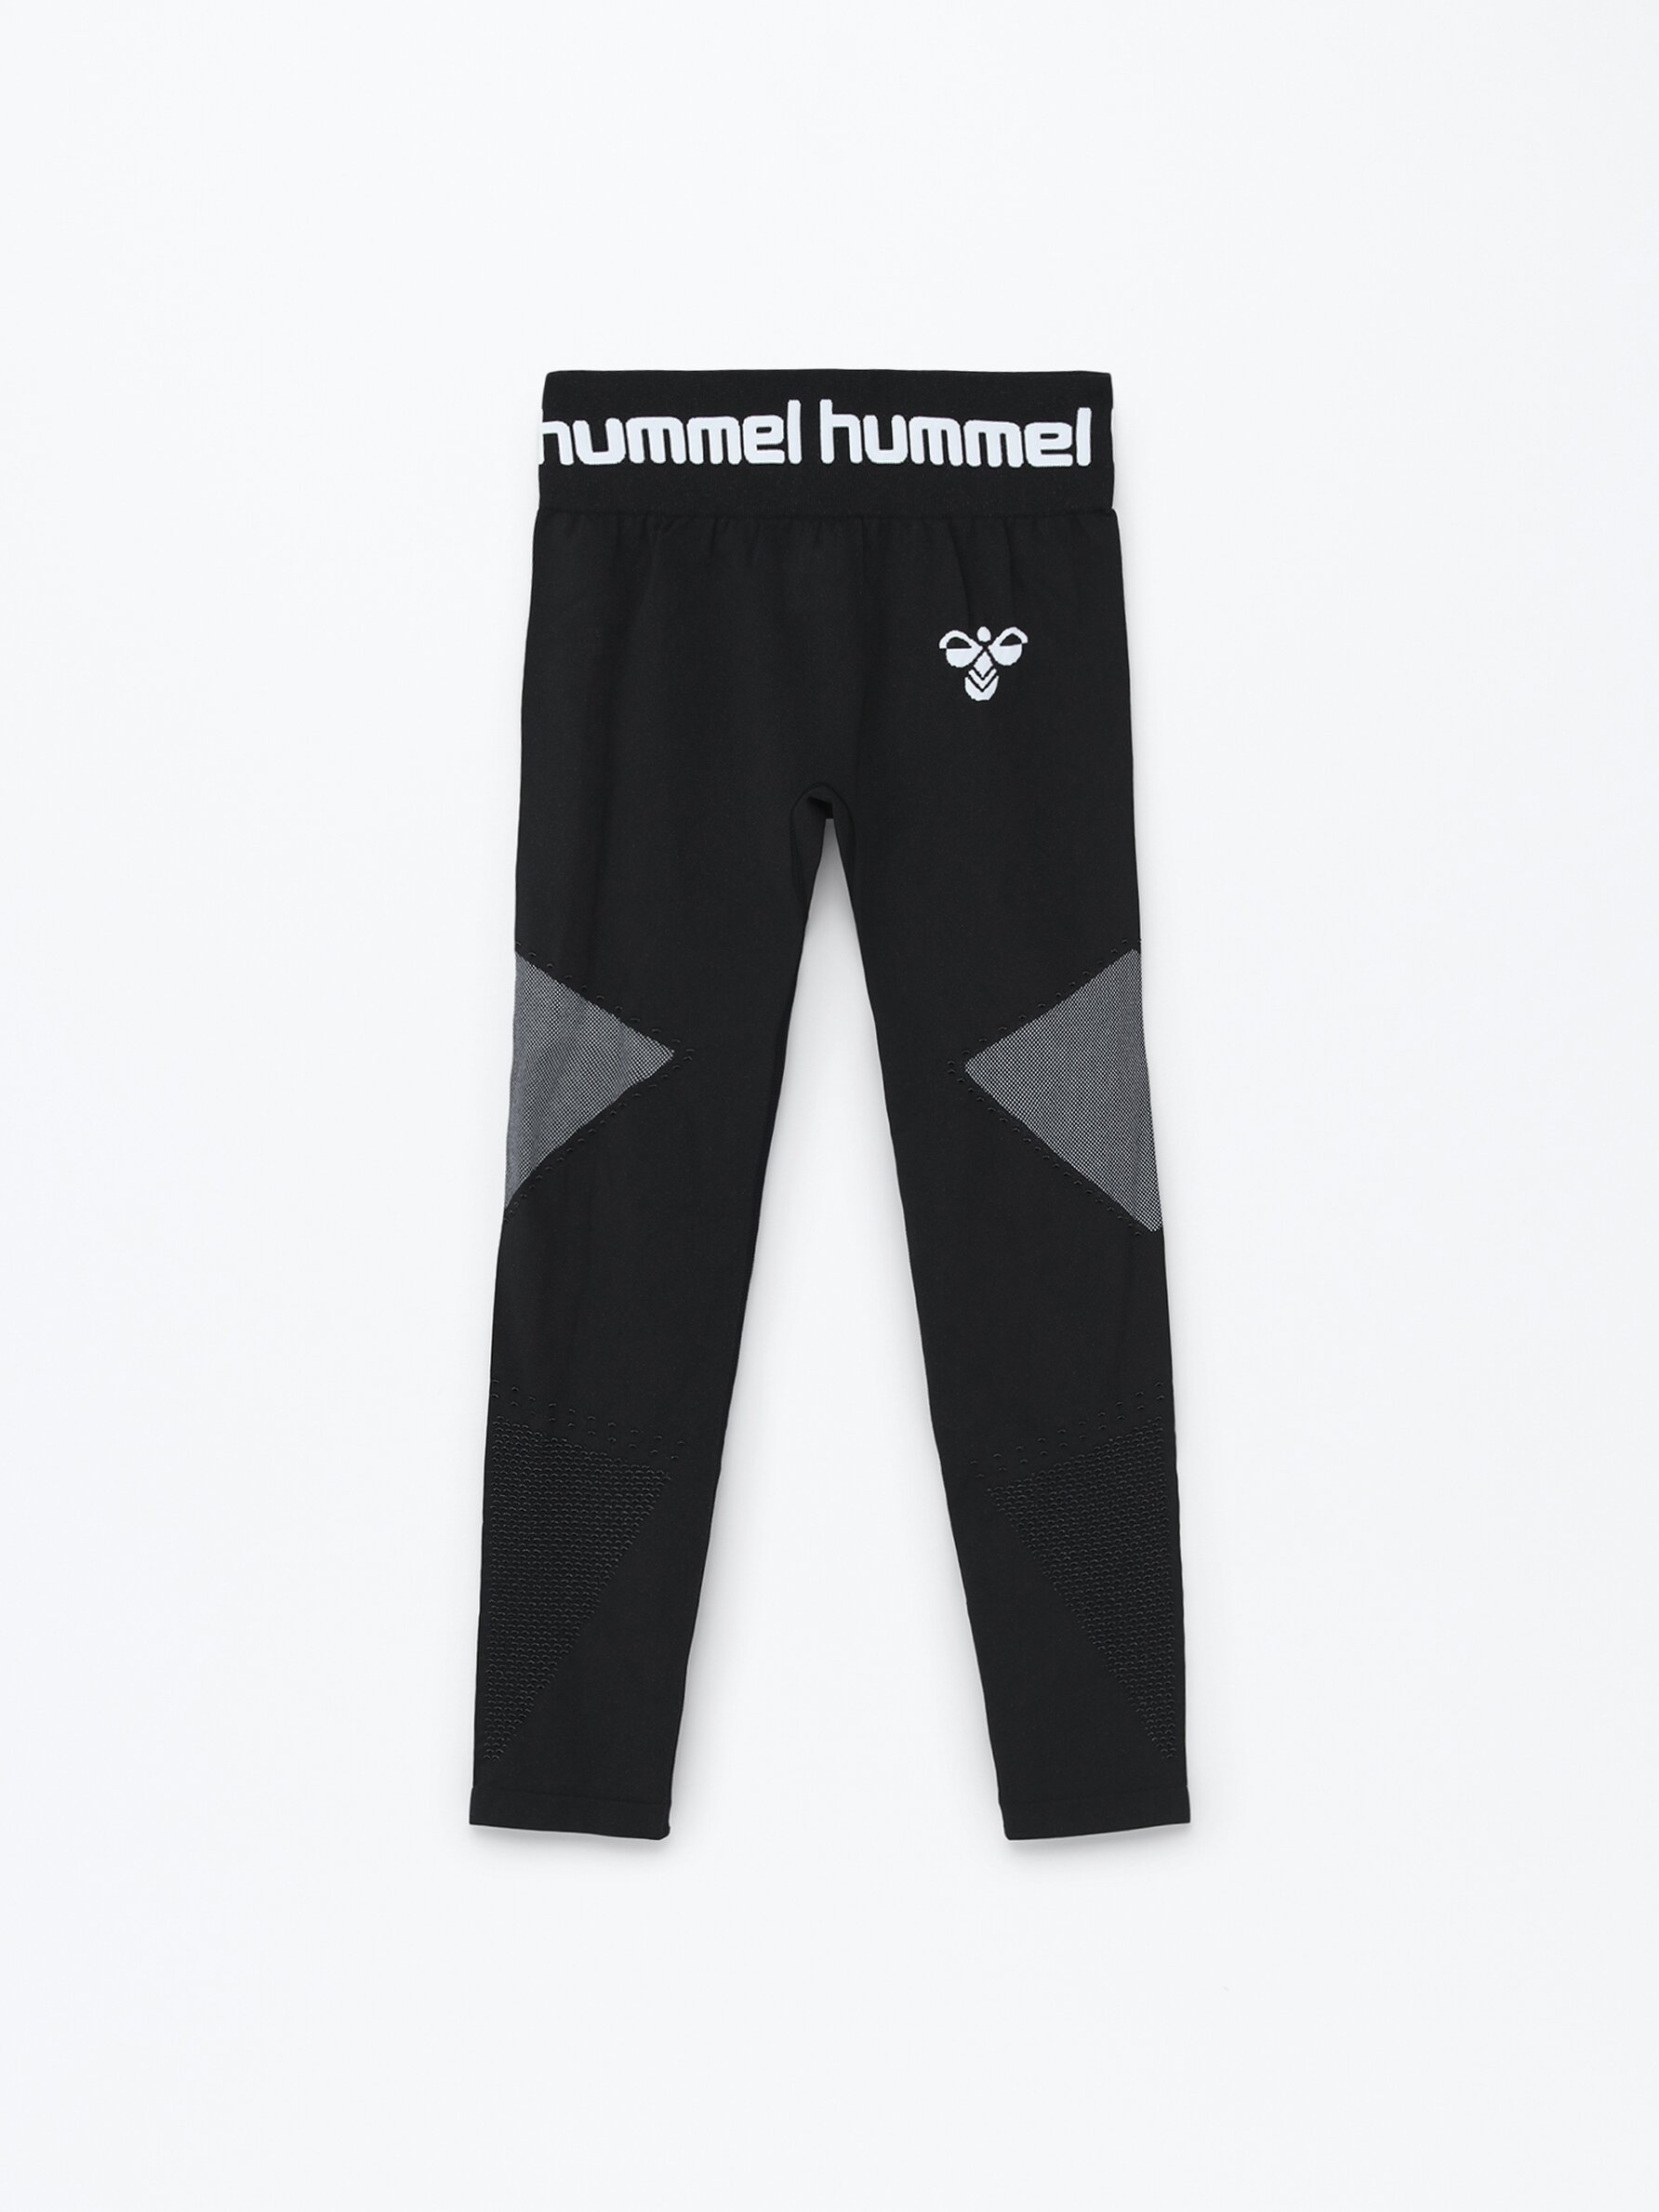 Seamless Hummel x Lefties leggings CLOTHING Lefties - - - Bras Turkey Sportswear Woman | Sports - 